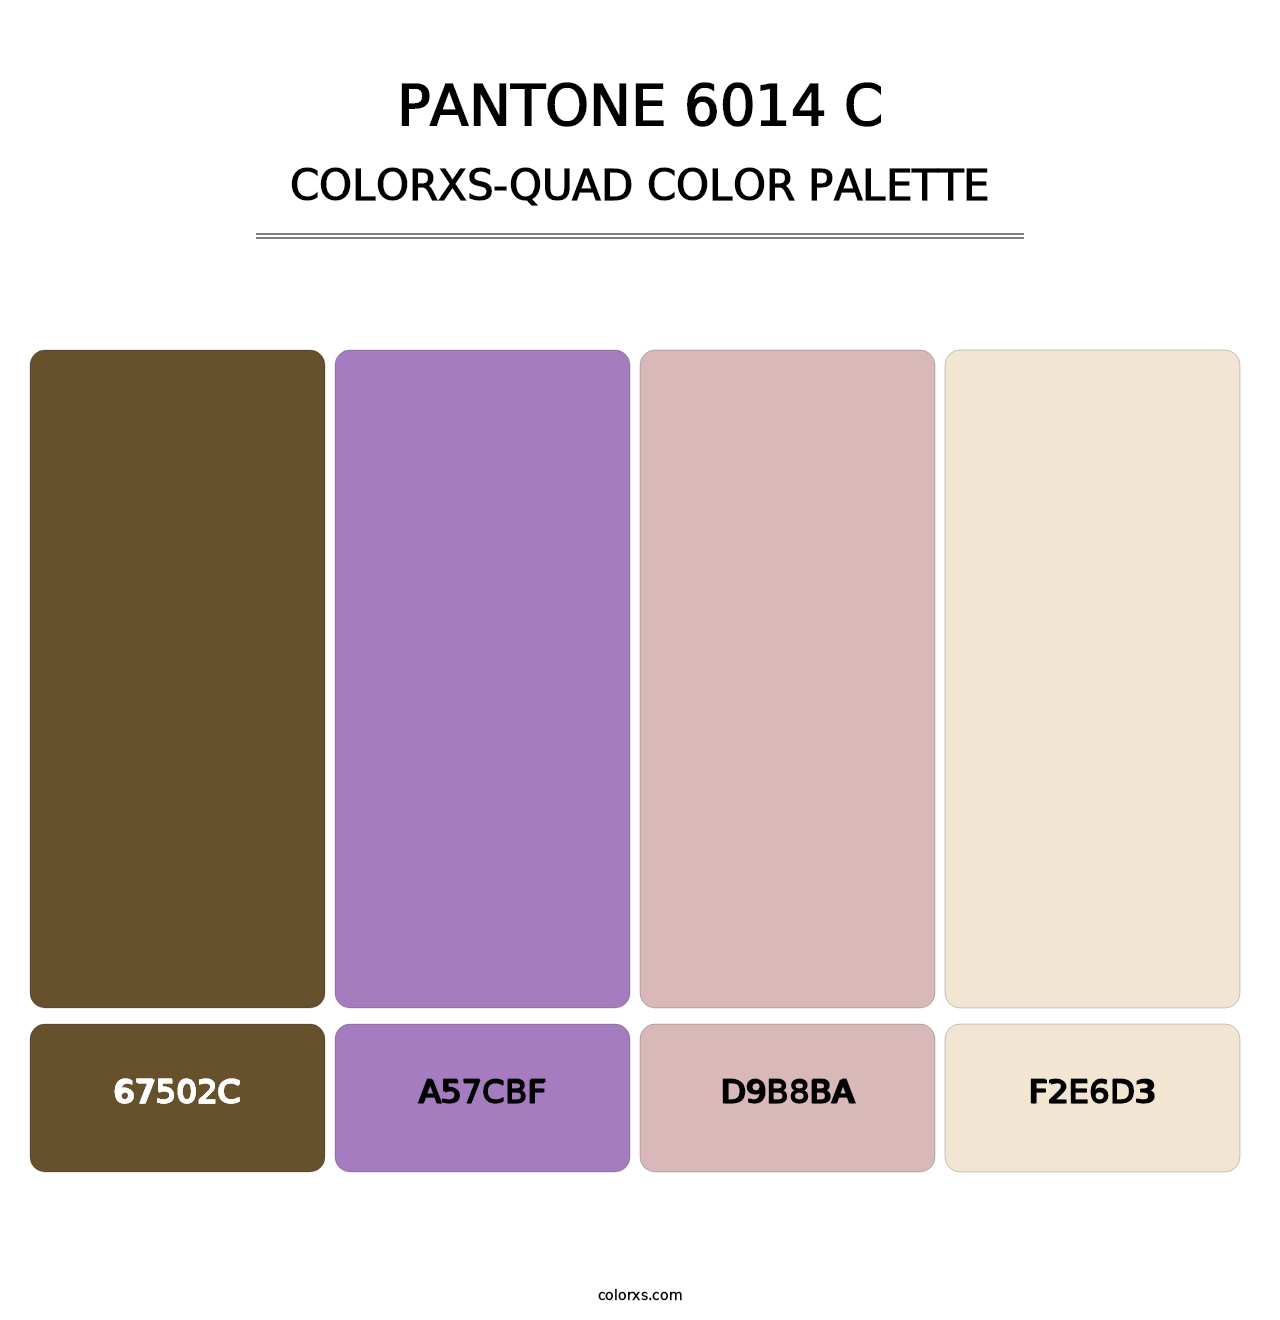 PANTONE 6014 C - Colorxs Quad Palette